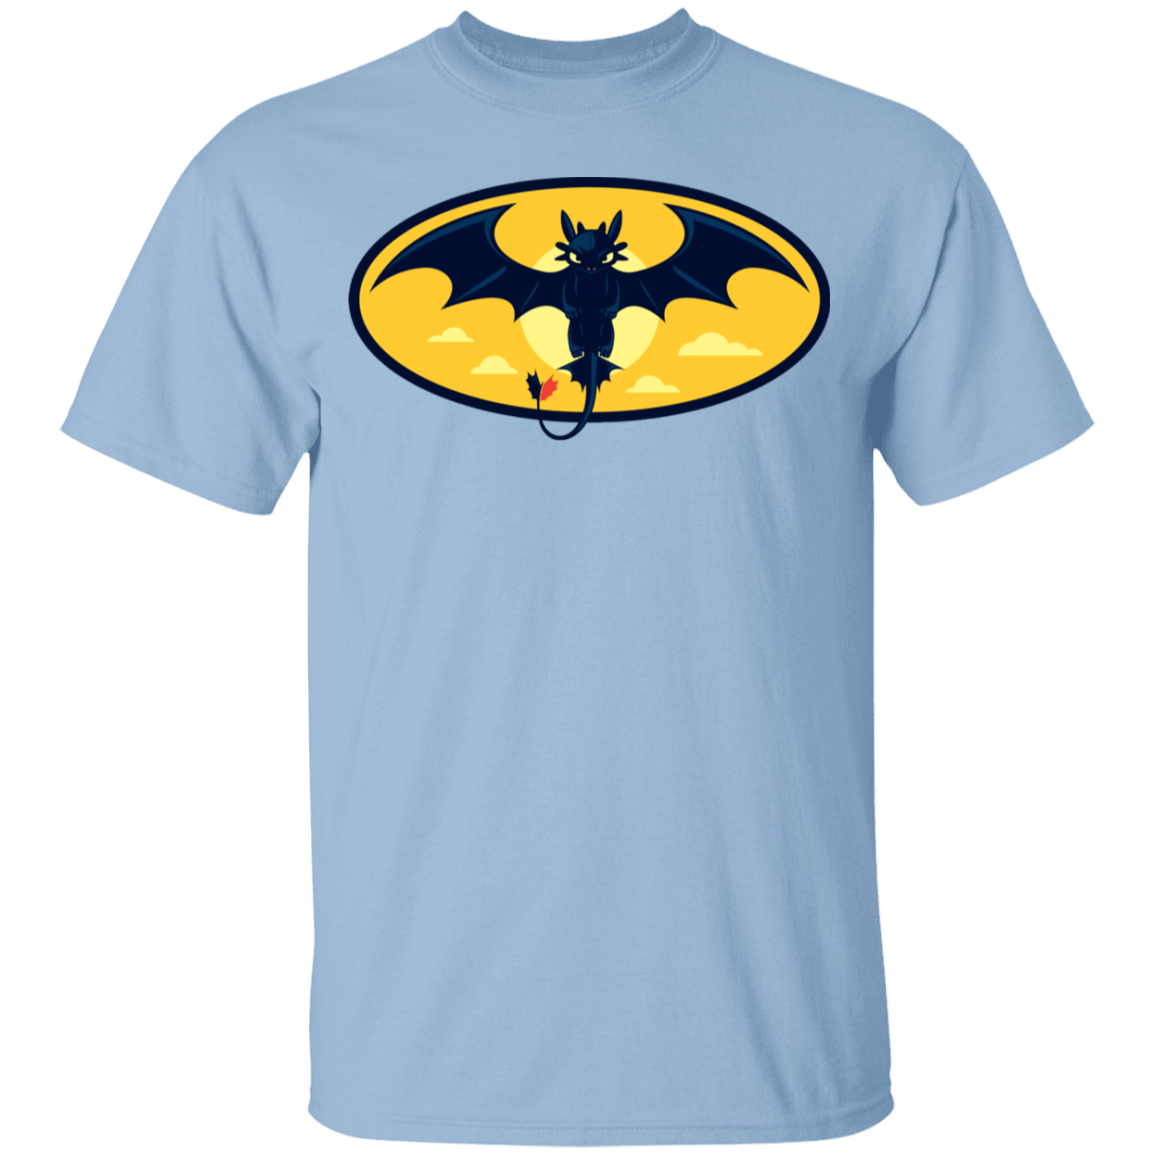 T-Shirts Light Blue / YXS Nightwing Youth T-Shirt